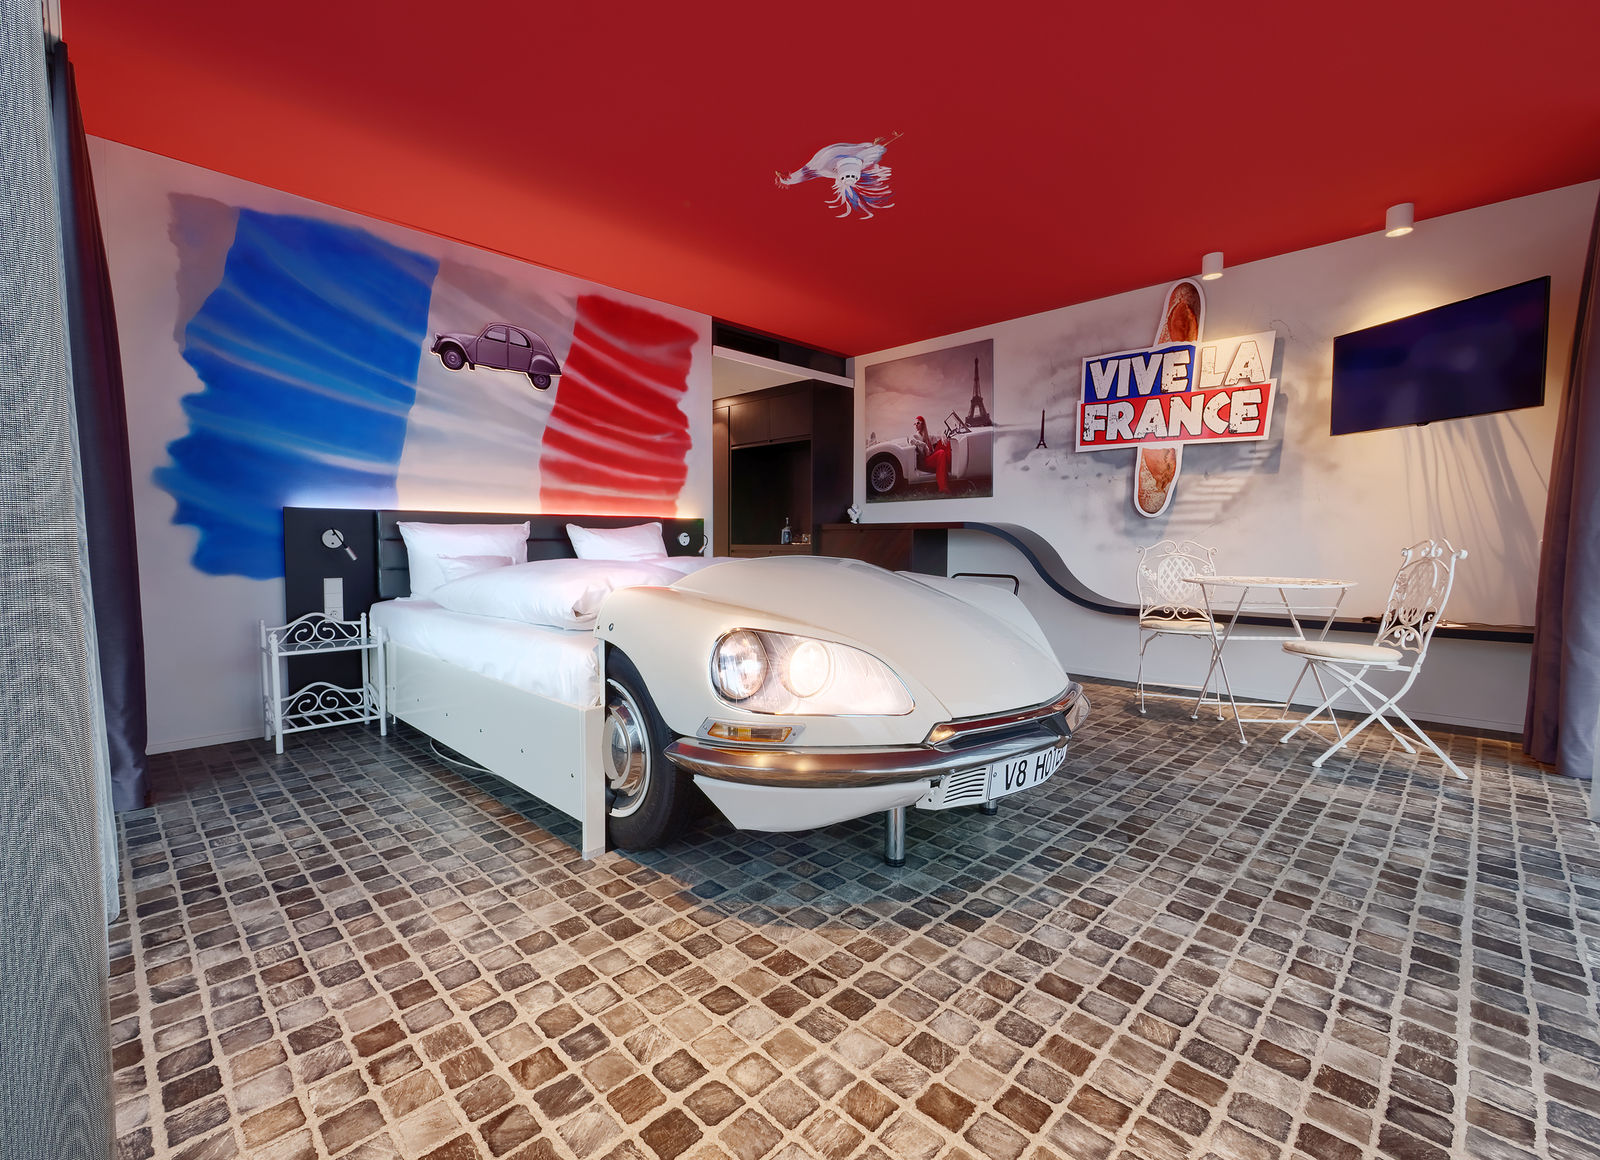 Frankreich-Themenzimmer im V8 Hotel eingerichtet mit zwei Metallstühlen an einem weißen Metalltisch, einer Frankreichflagge über dem Autobett und einem Baguette Schild an der Wand